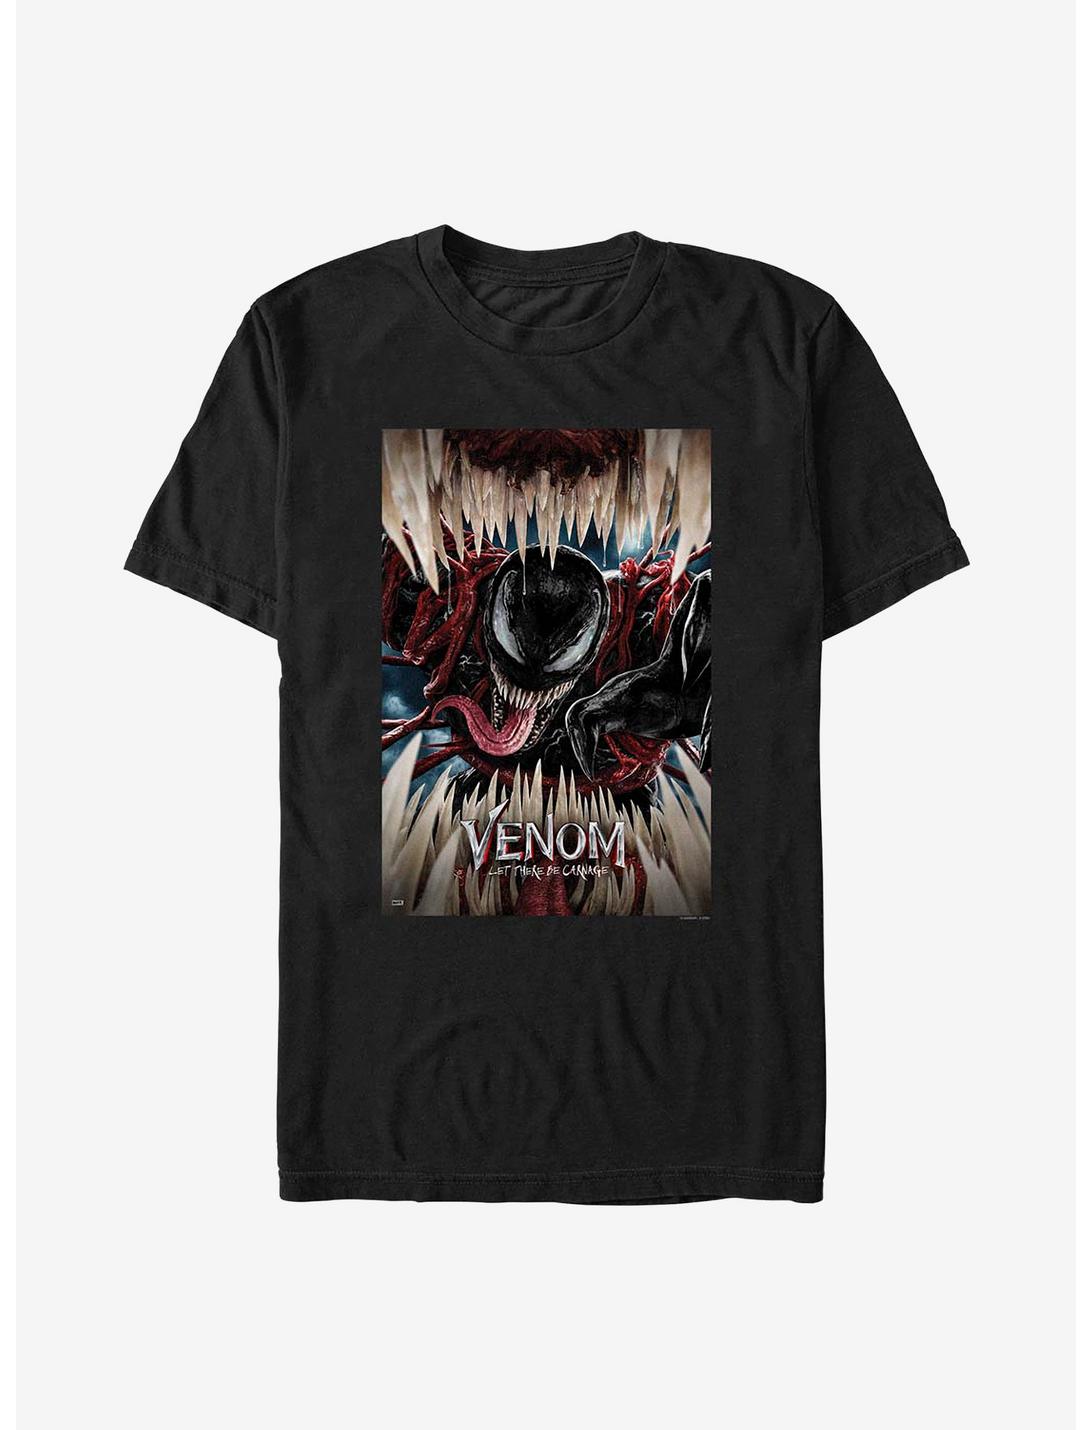 Marvel Venom: Let There Be Carnage Poster T-Shirt, BLACK, hi-res